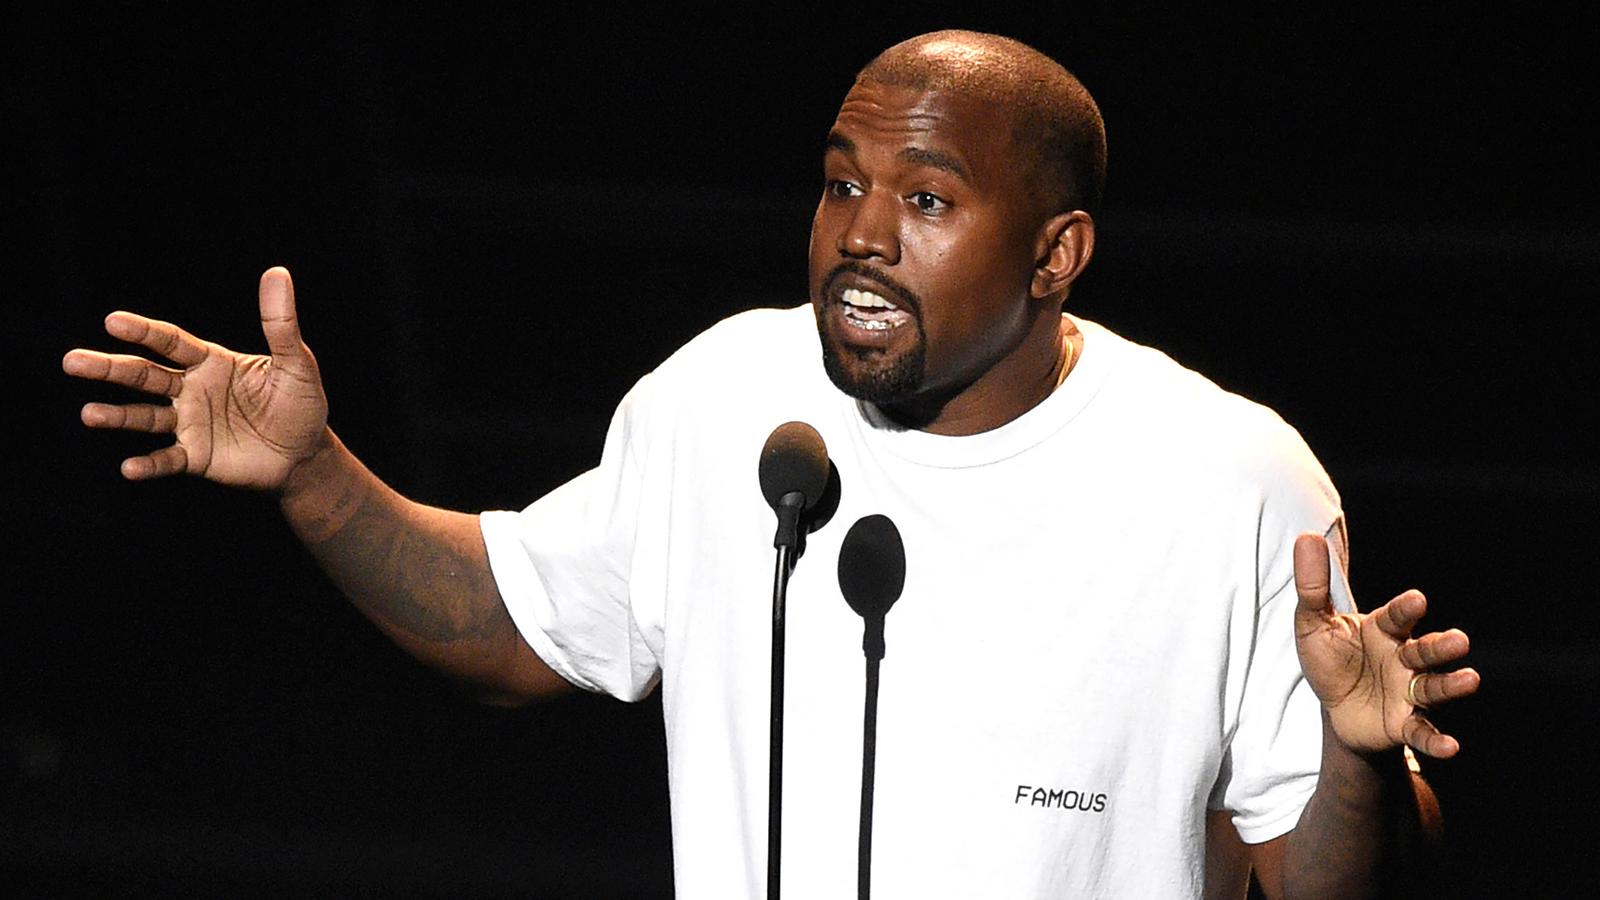 Läckta mejl visar att Kanye West kan ha överdoserat när han tvingades ställa in fjolårets konserter.